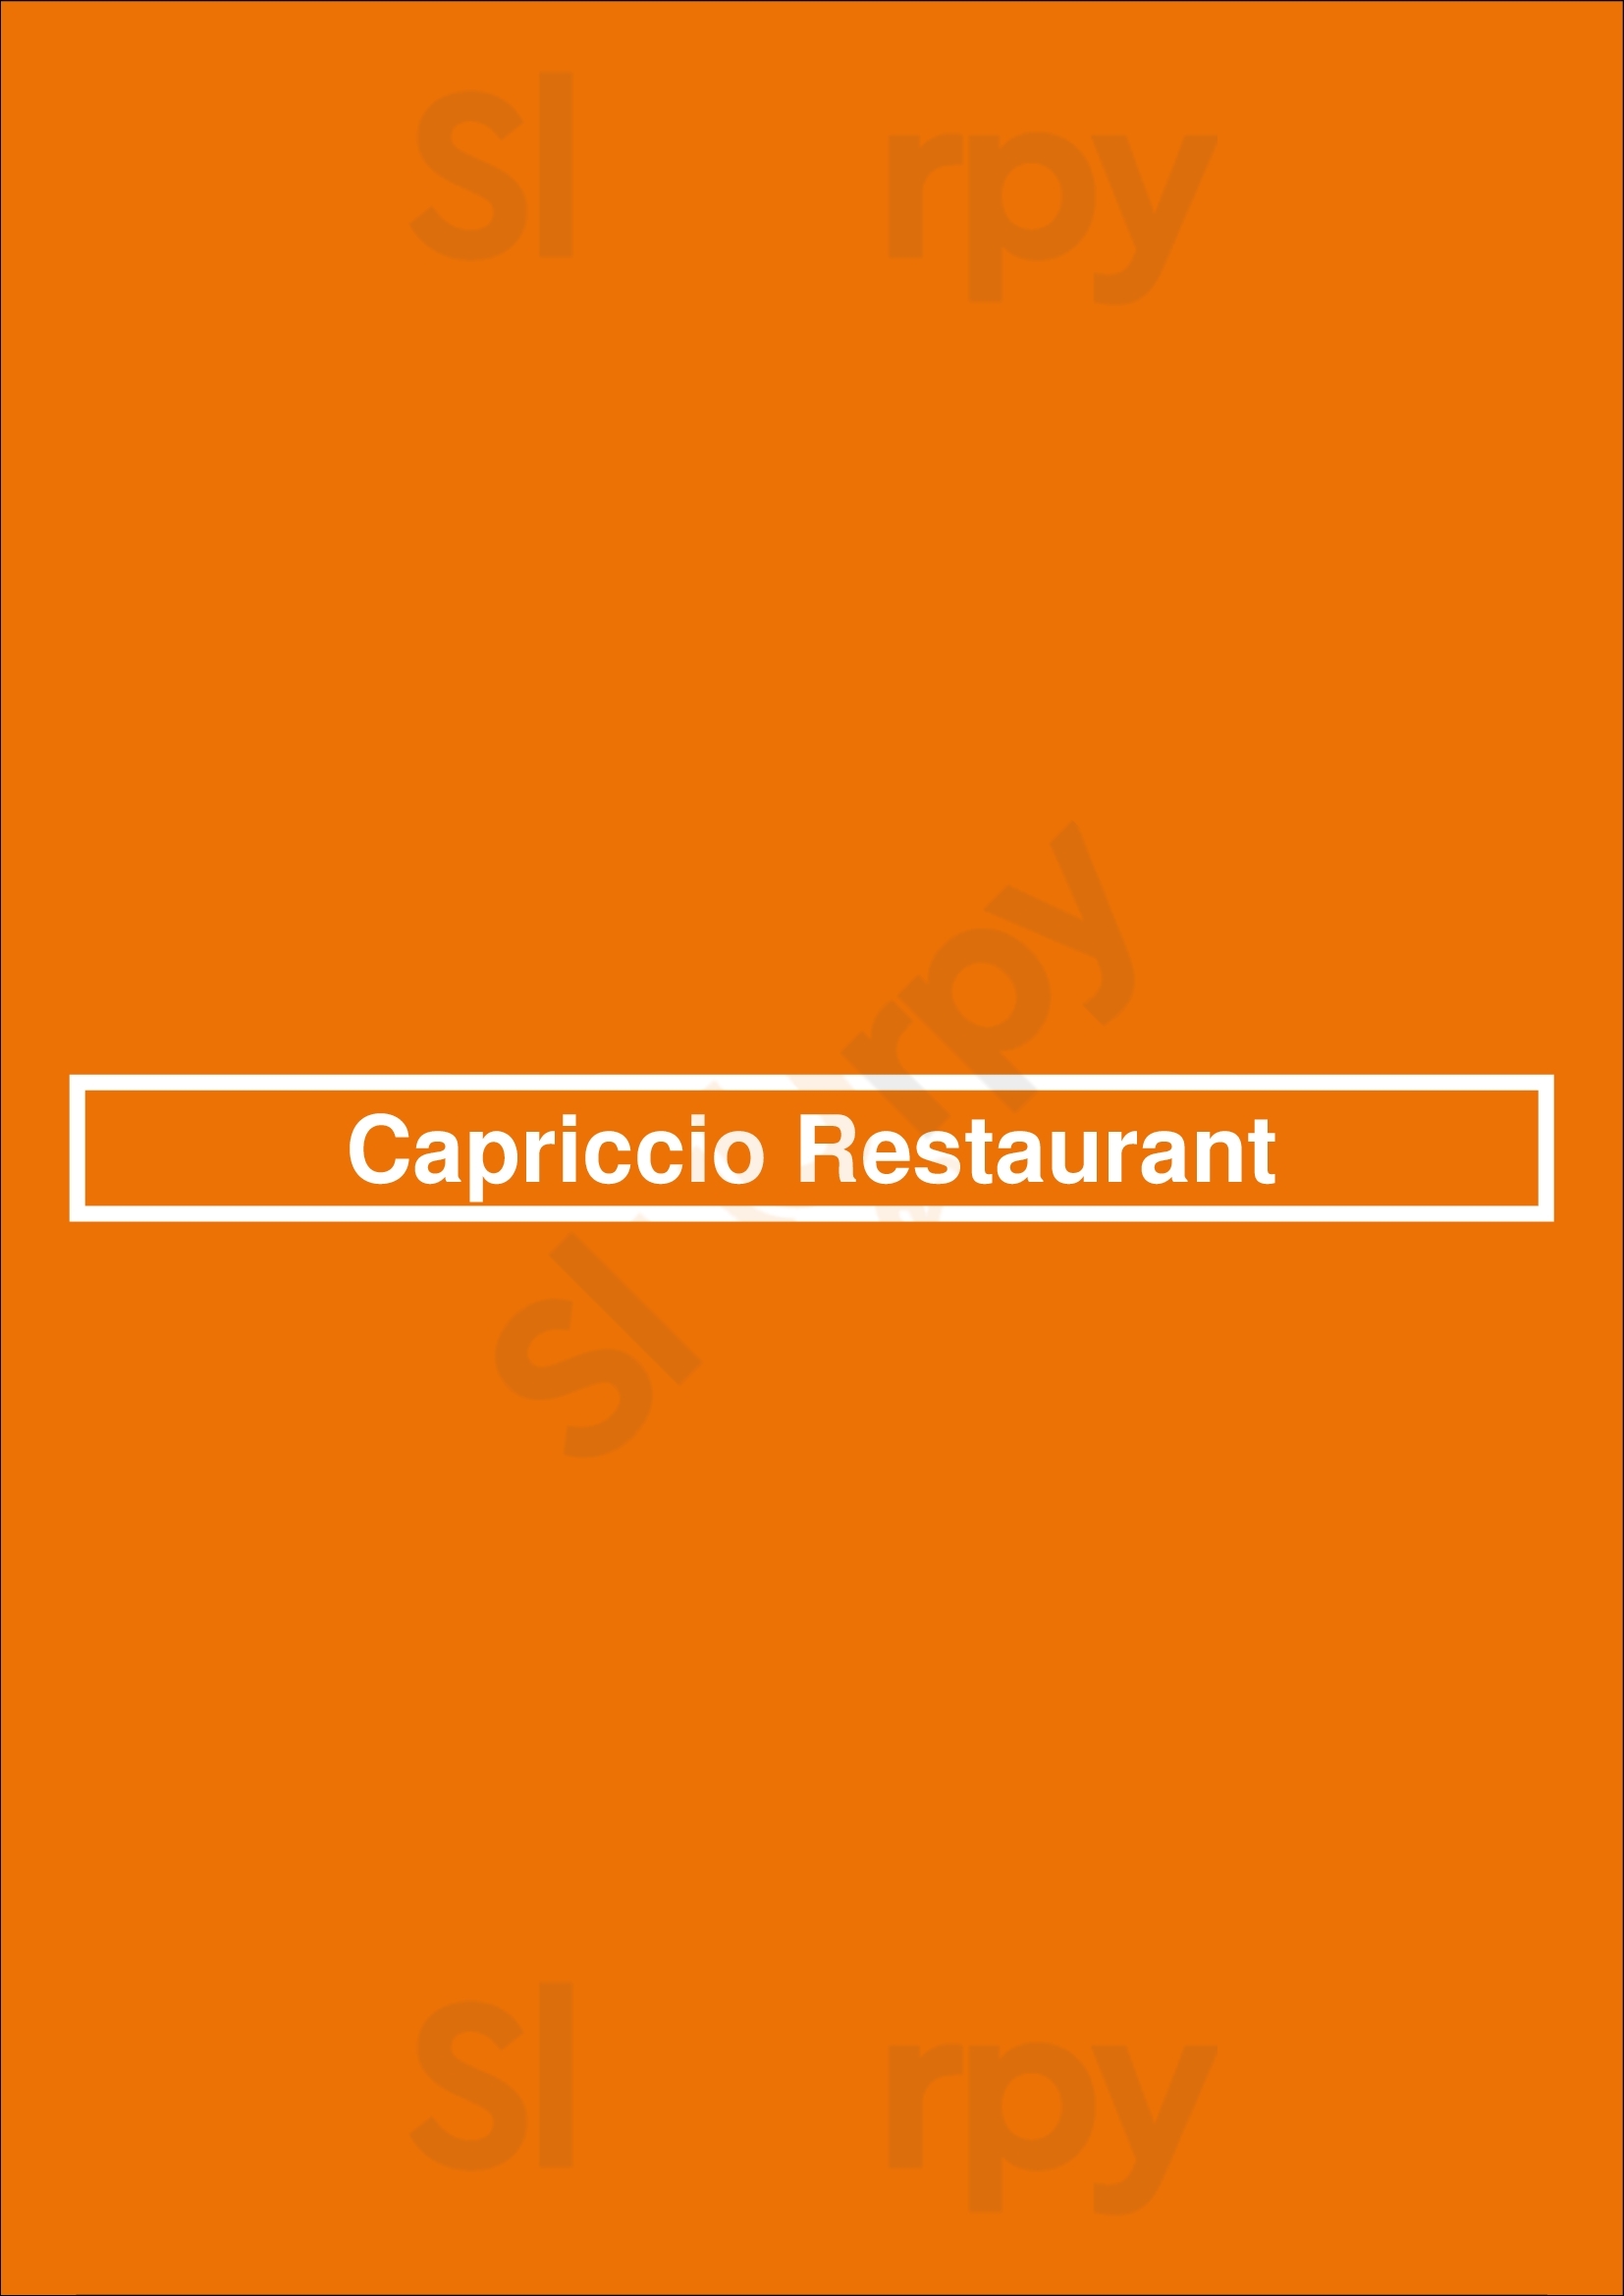 Capriccio Restaurant Glenelg Menu - 1